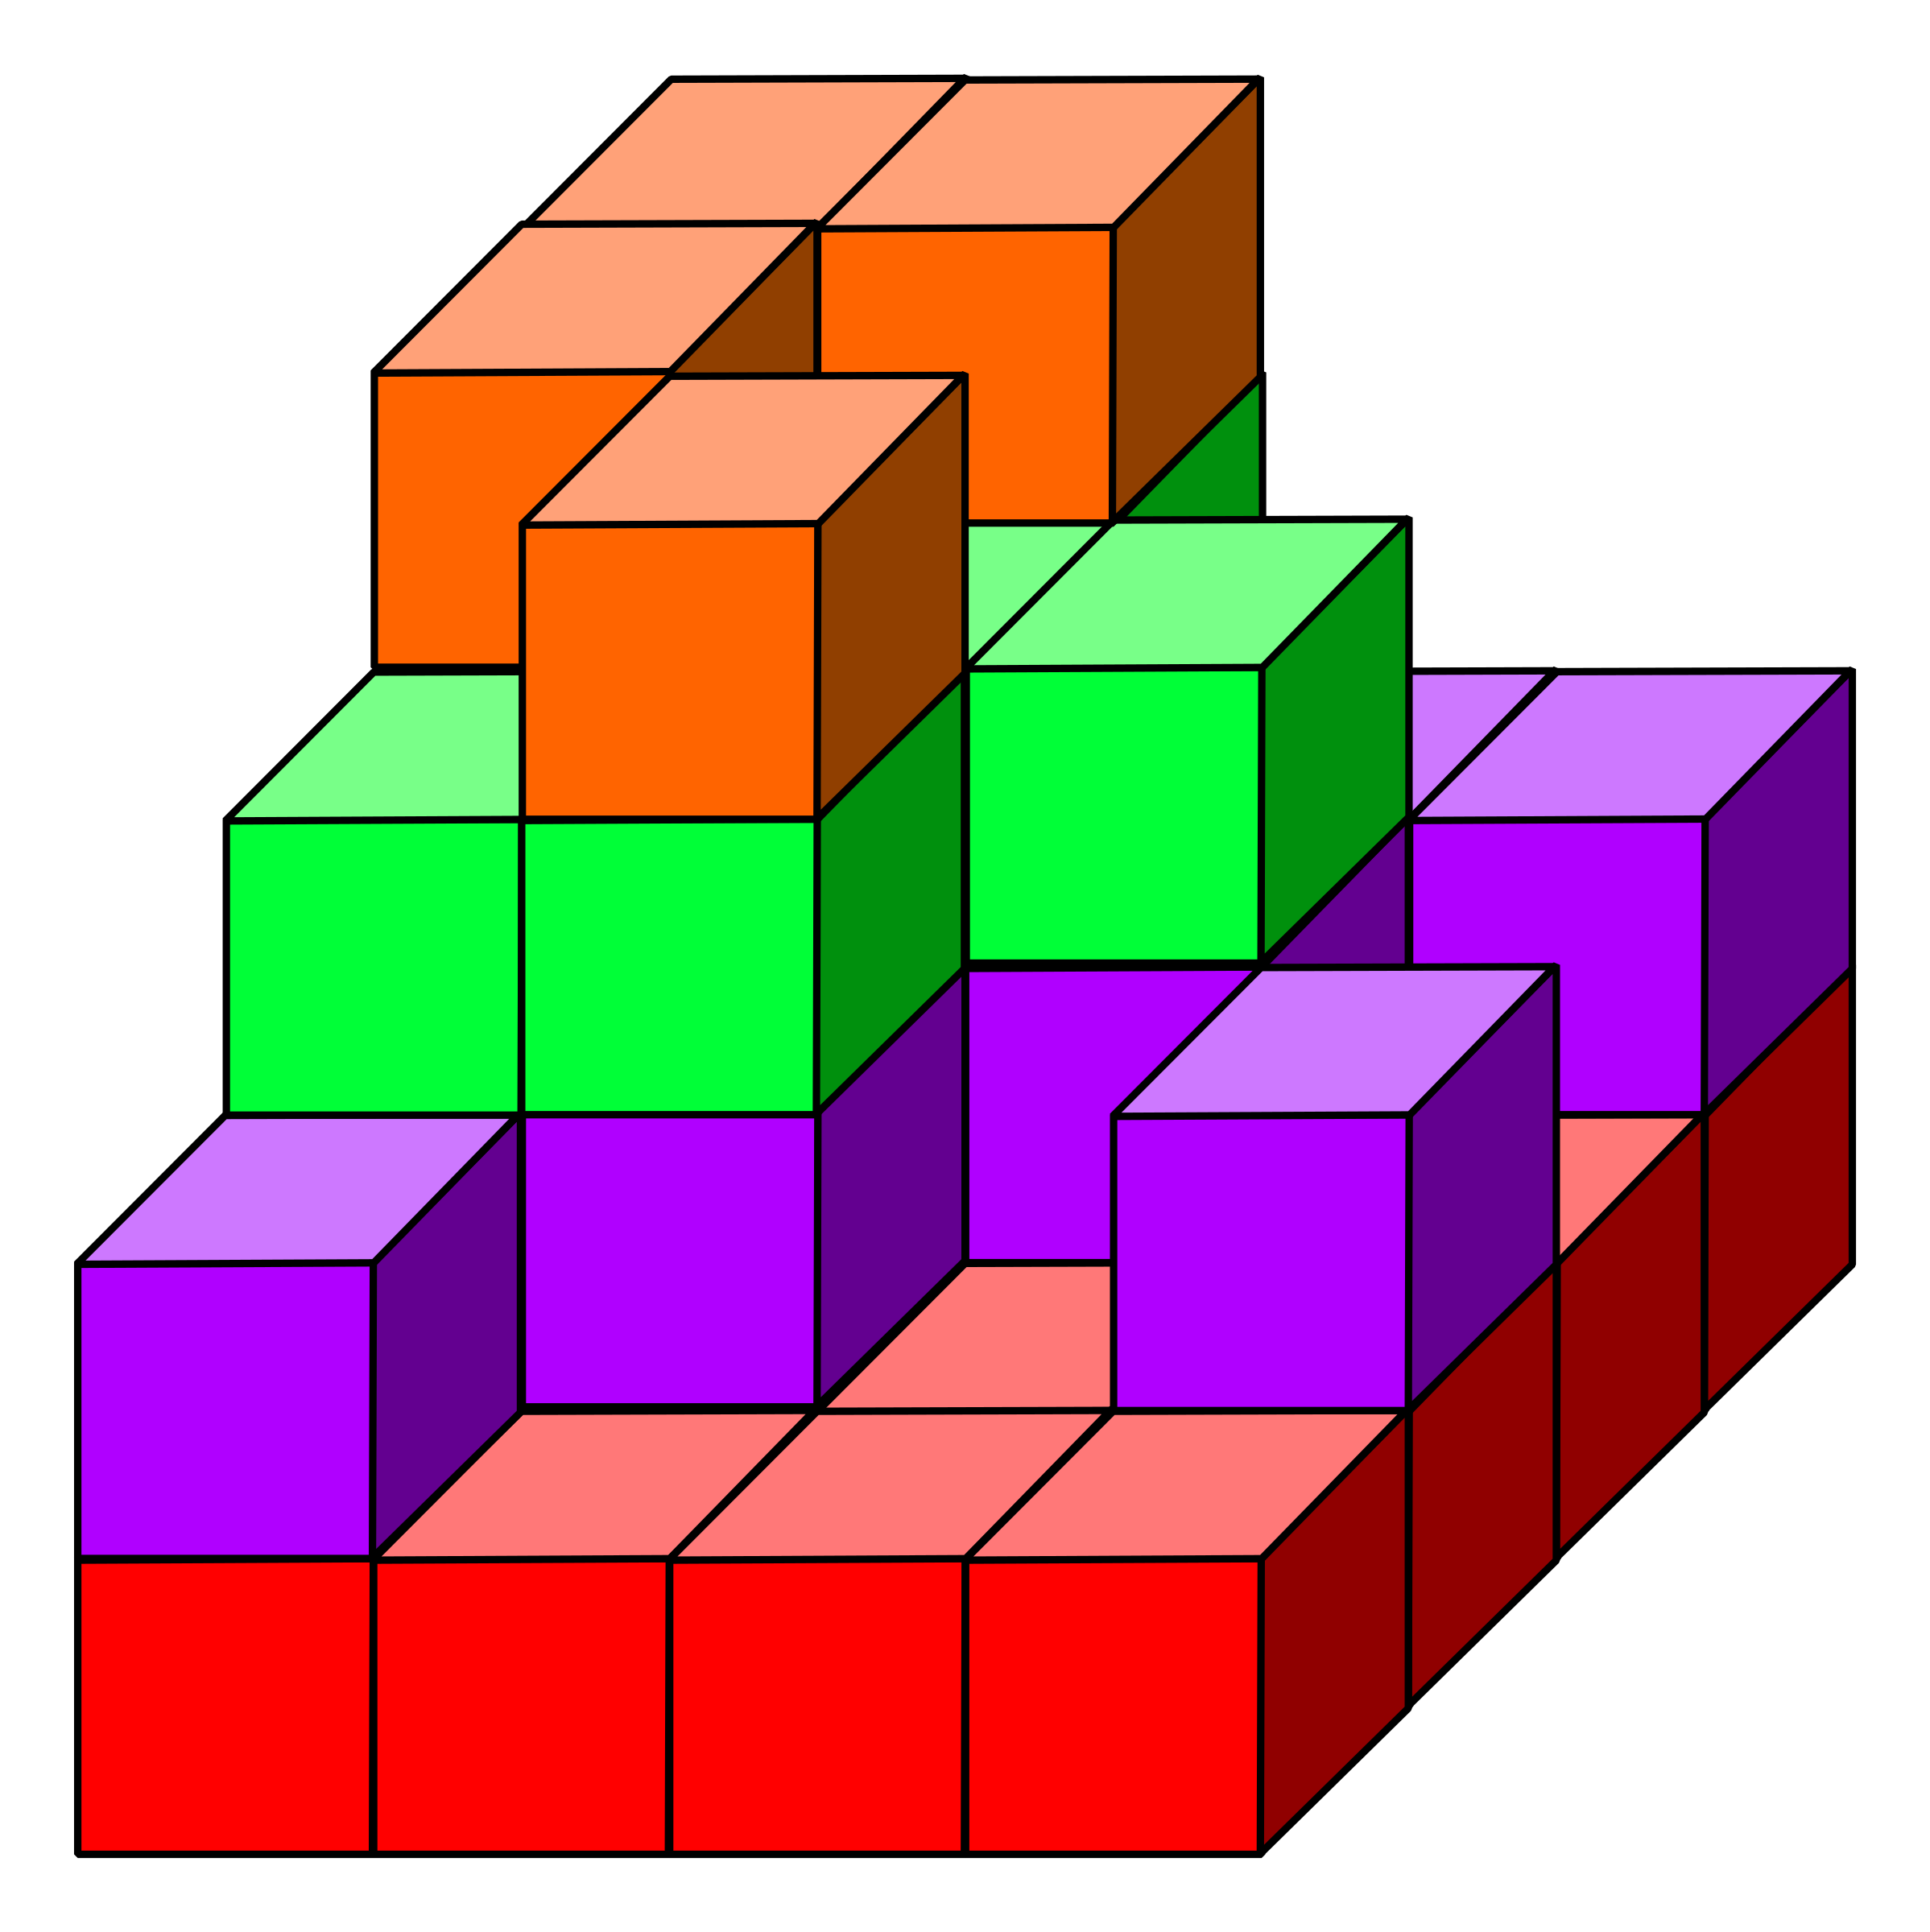 Picture #849060 - cube clipart 3d rectangle. cube clipart 3d rectangle. 